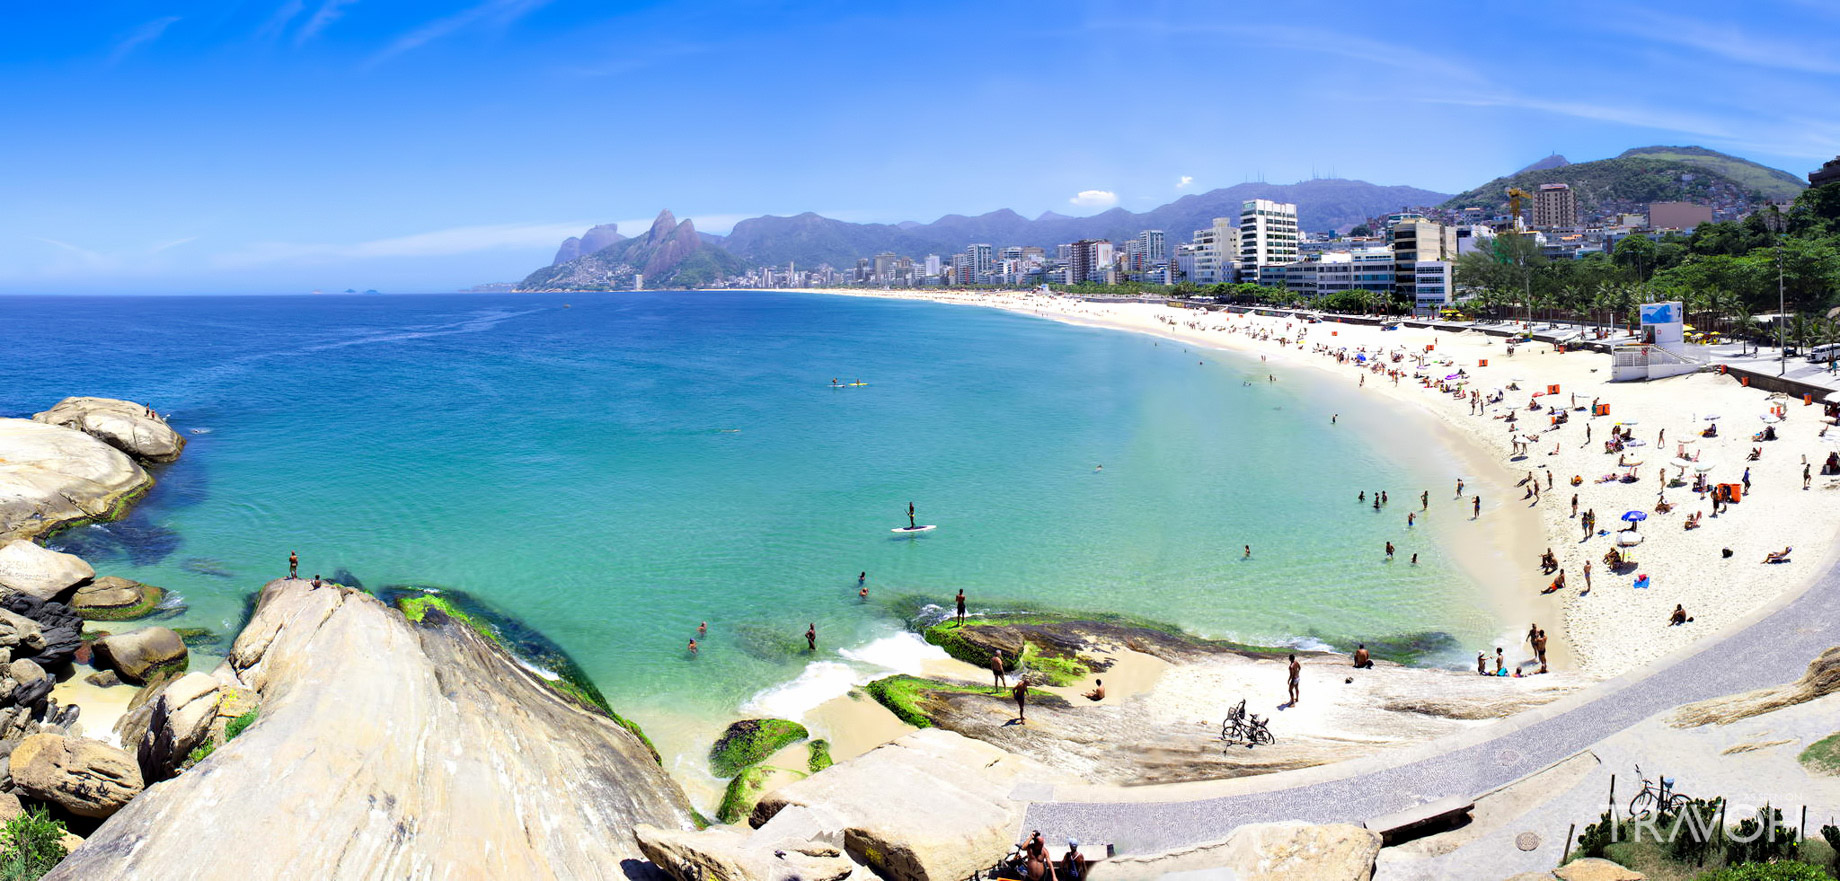 Arpoador Beach - Exploring 10 of the Top Beaches in Rio de Janeiro, Brazil